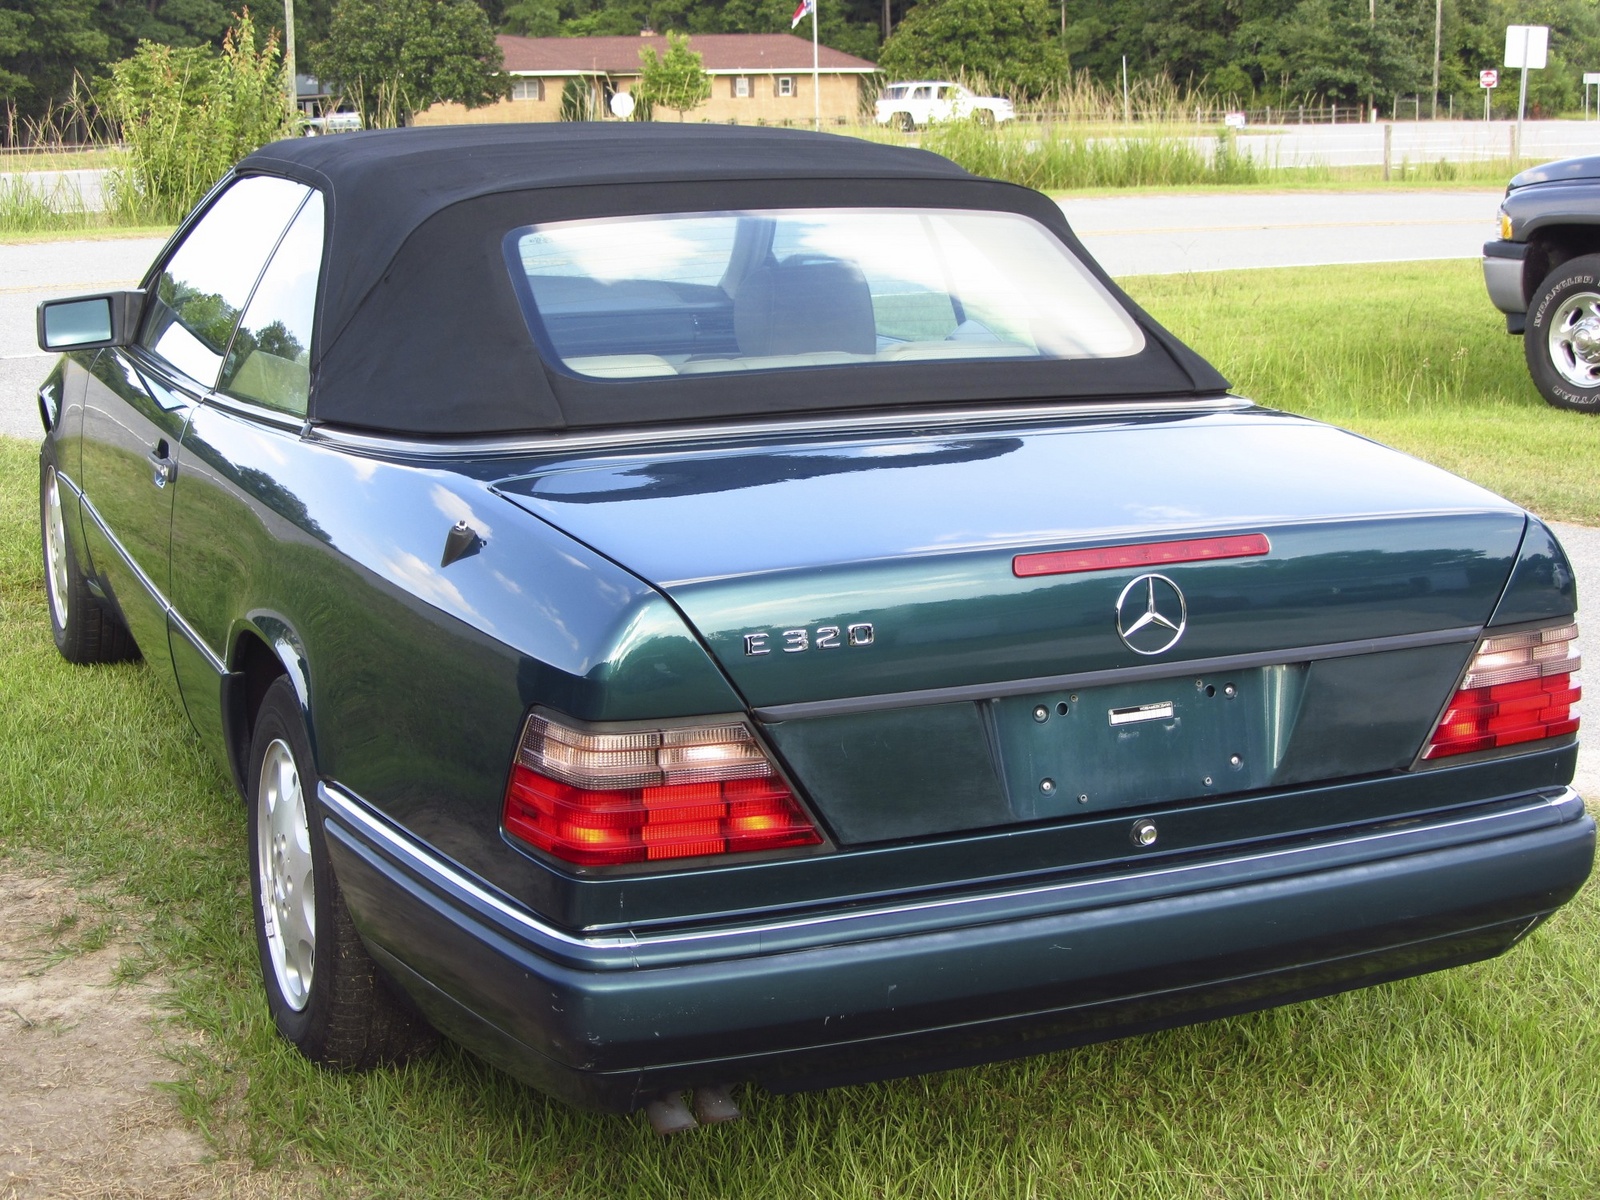 1995 Mercedes benz e320 convertible review #3